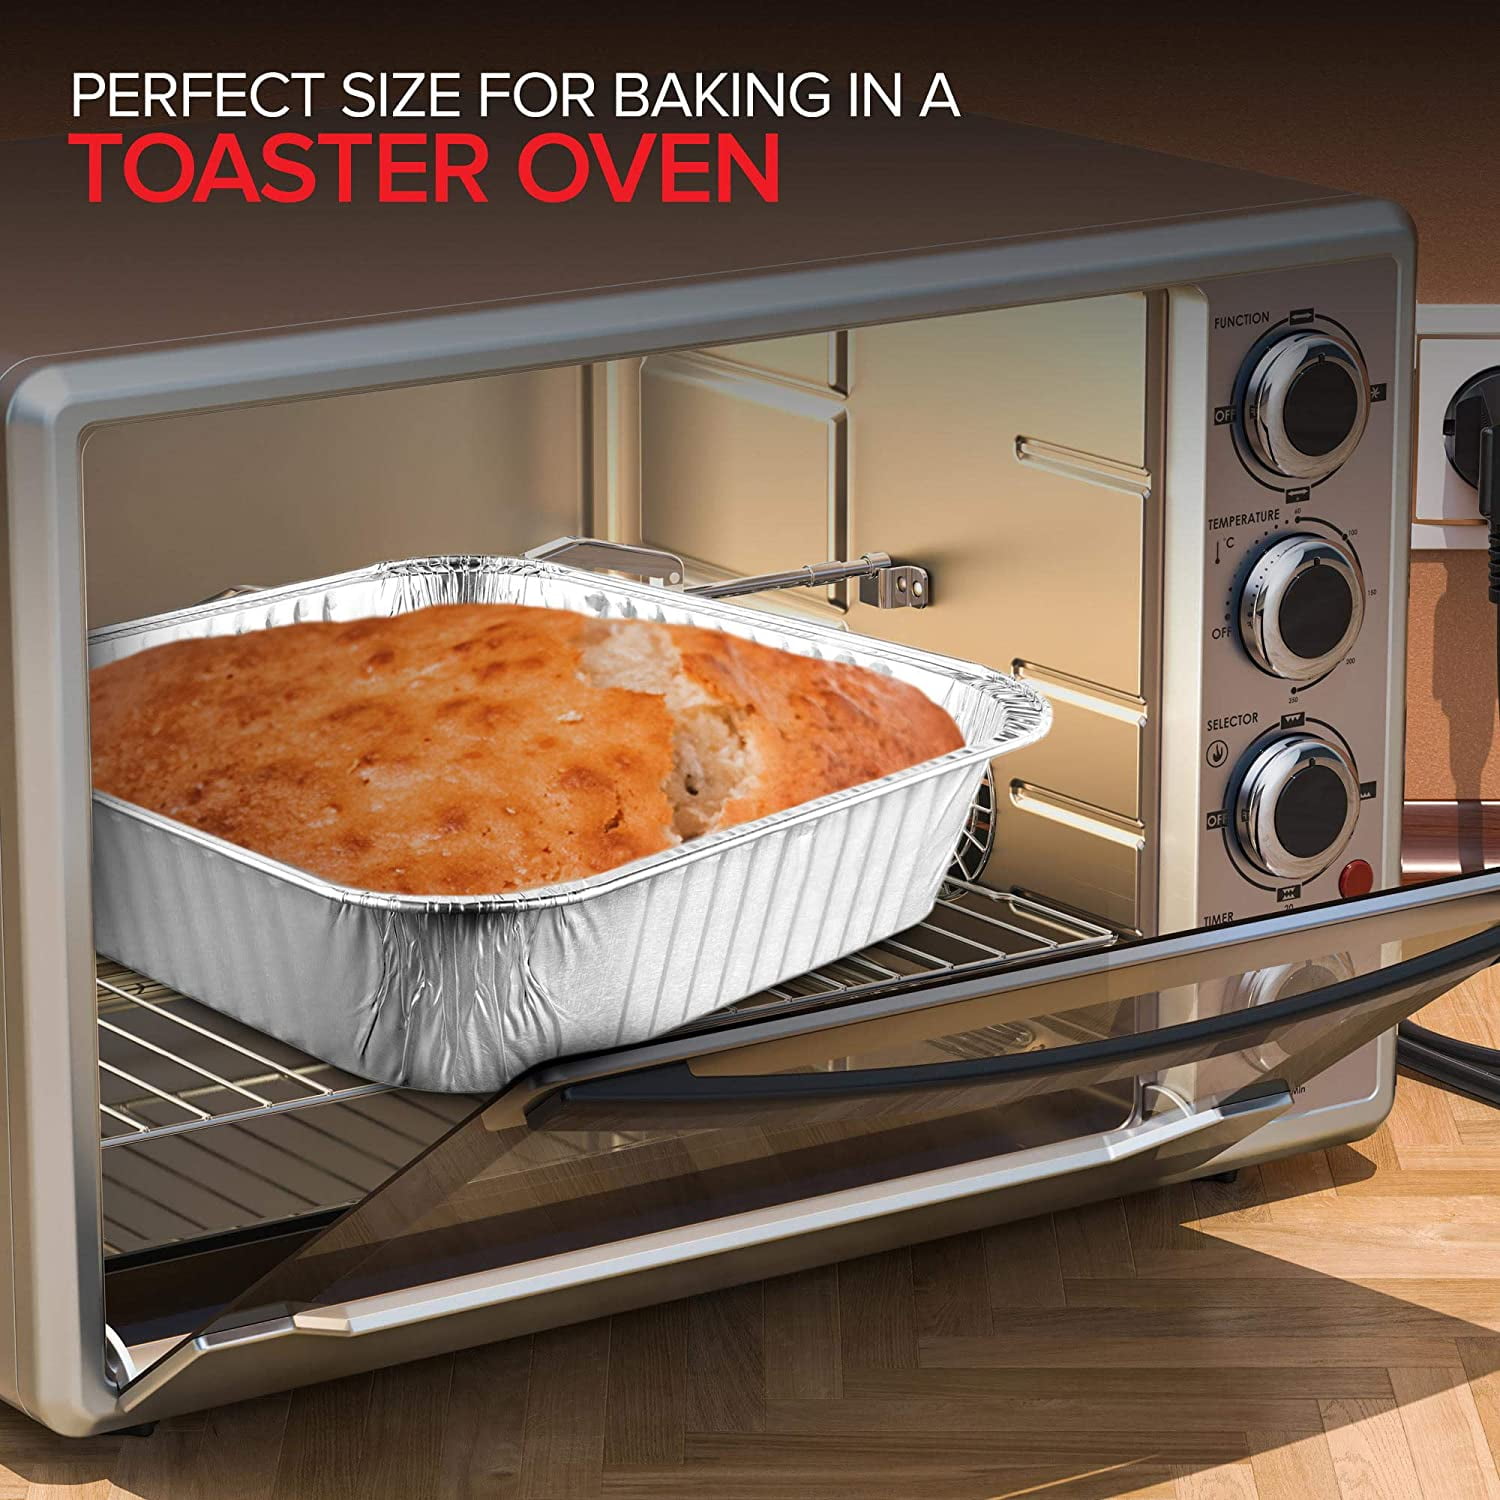 20 Count) 8 Square Disposable Aluminum Cake Pans - Foil Pans for Cooking,  Baki